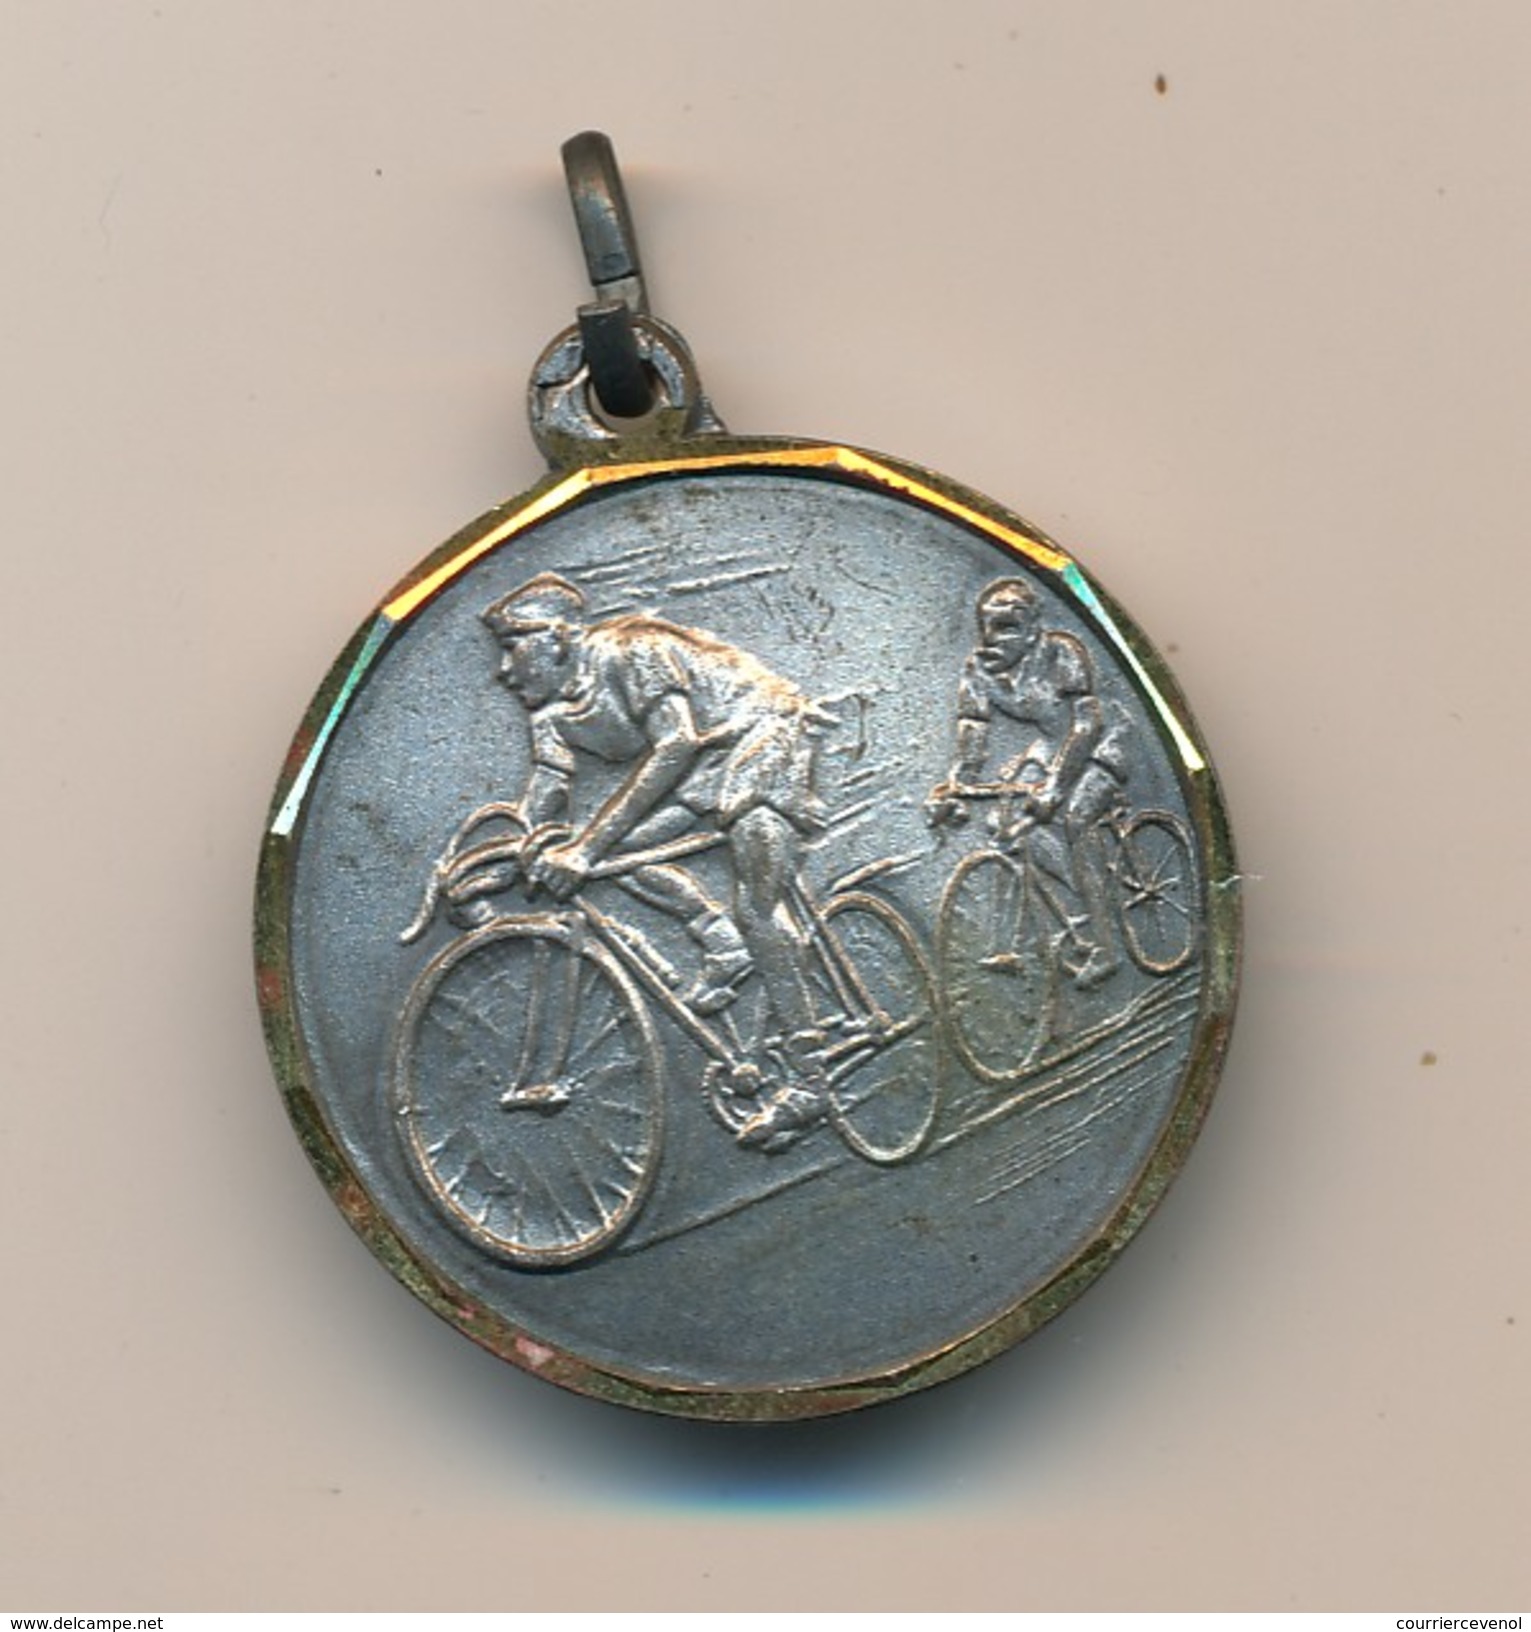 Petite Médaille (cyclistes) - P.J Rallye Du Castellet - Ciclismo